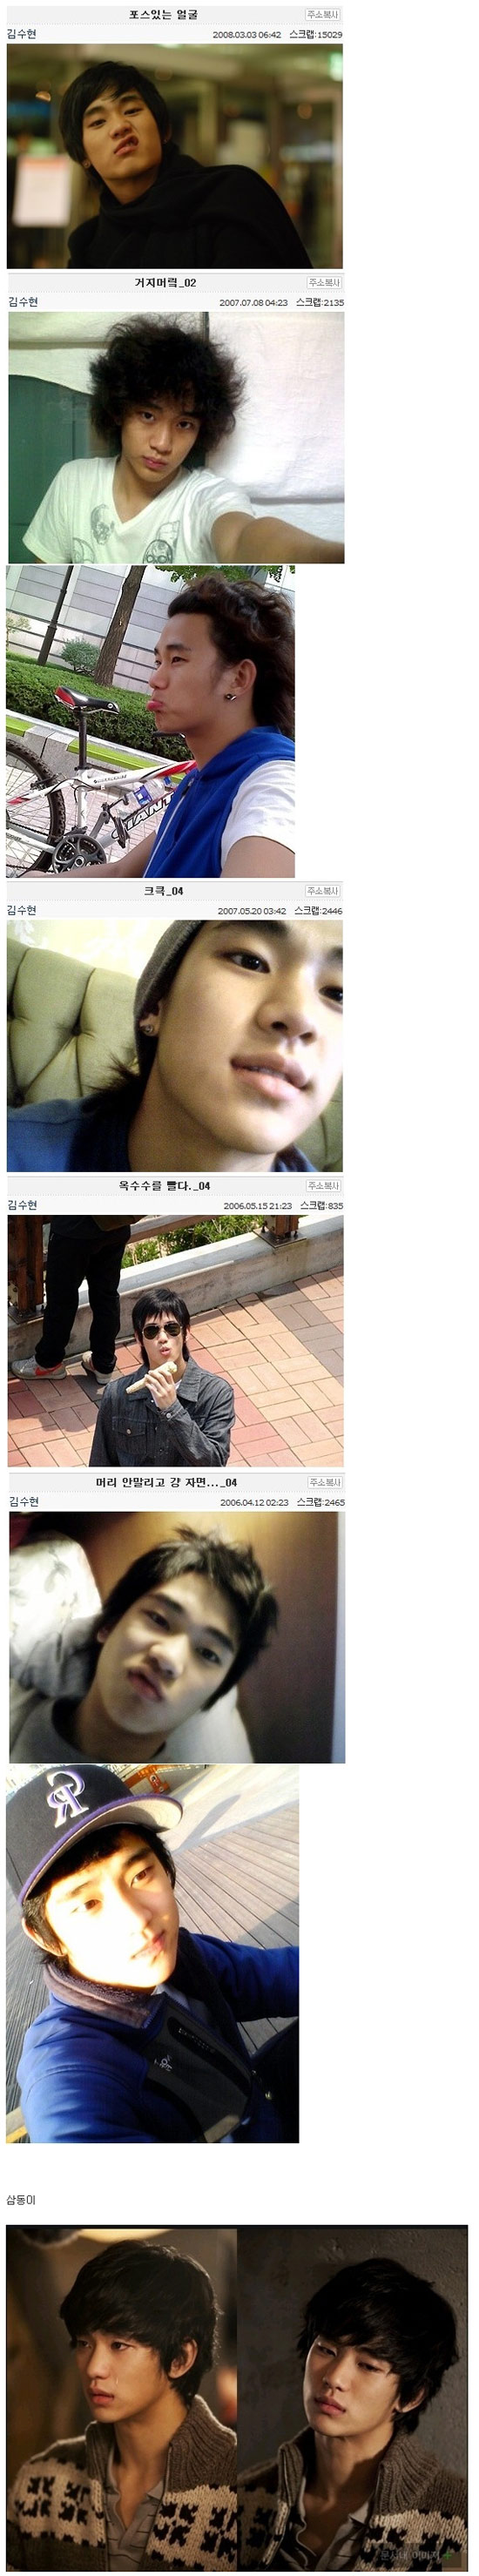 김수현 과거 미니홈피 사진들